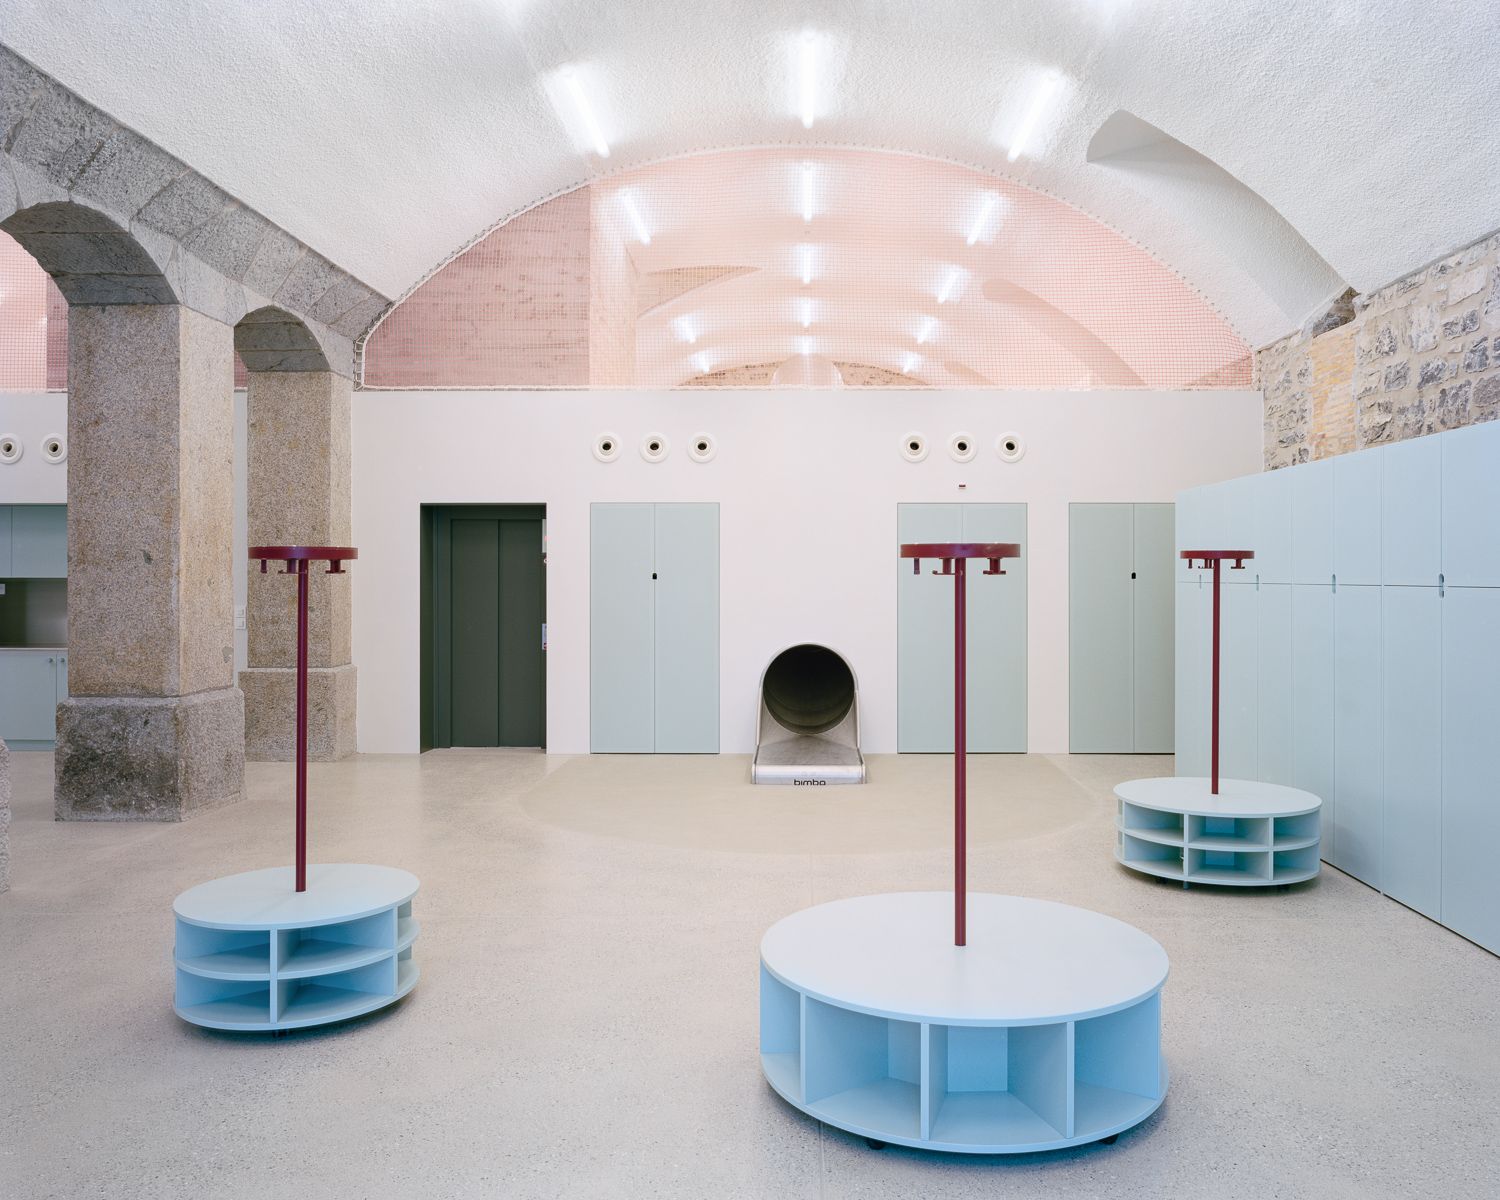 Das Architekturbüro Lacreux Chessex hat die Villa Ambrosetti in Genf zu einer Kindertagesstätte gewandelt. Foto: Lacroix Chessex